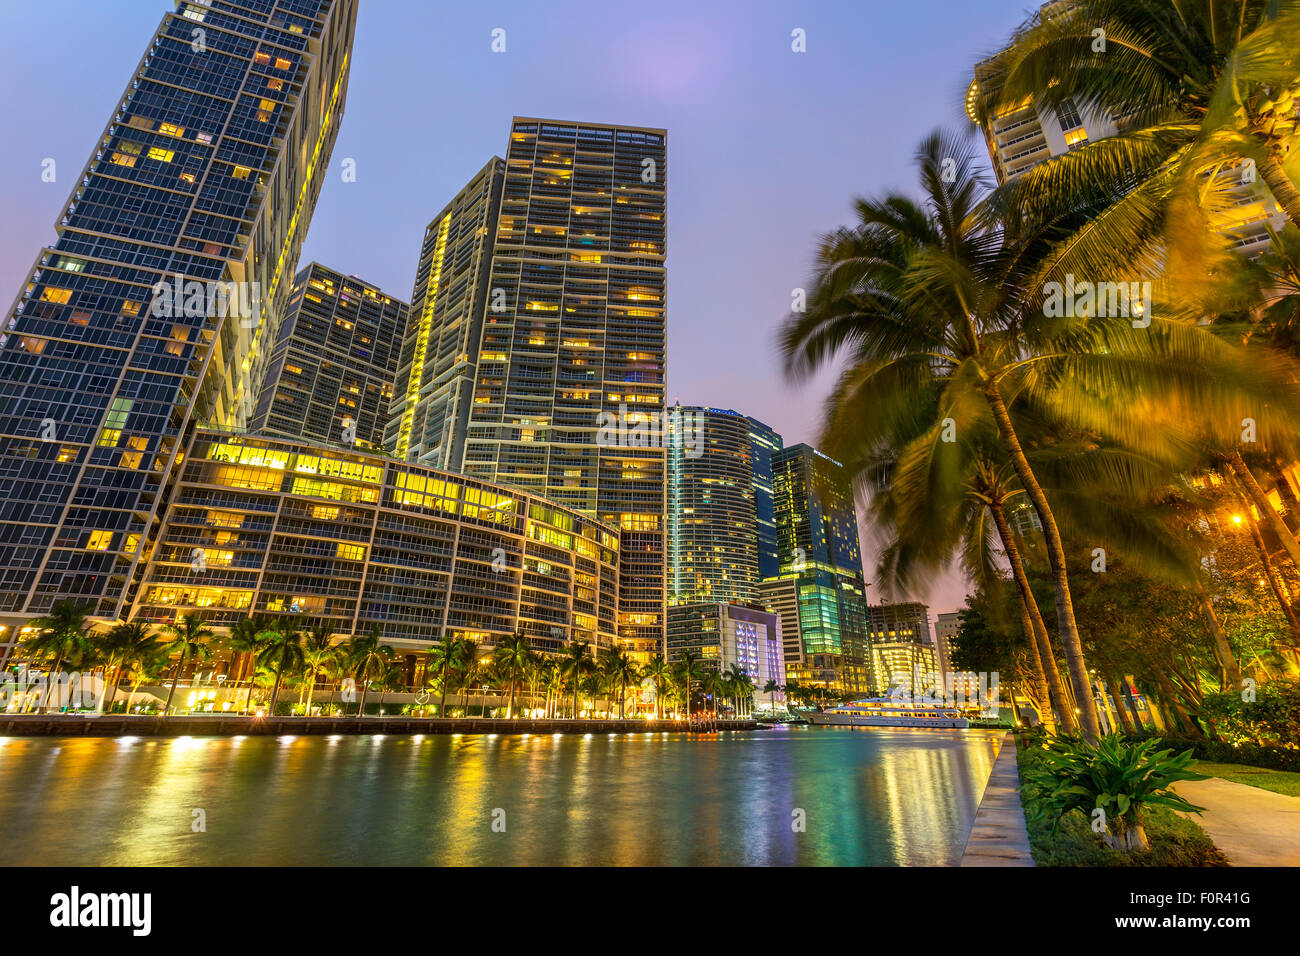 Centro de Miami, Brickell Key en la noche Foto de stock